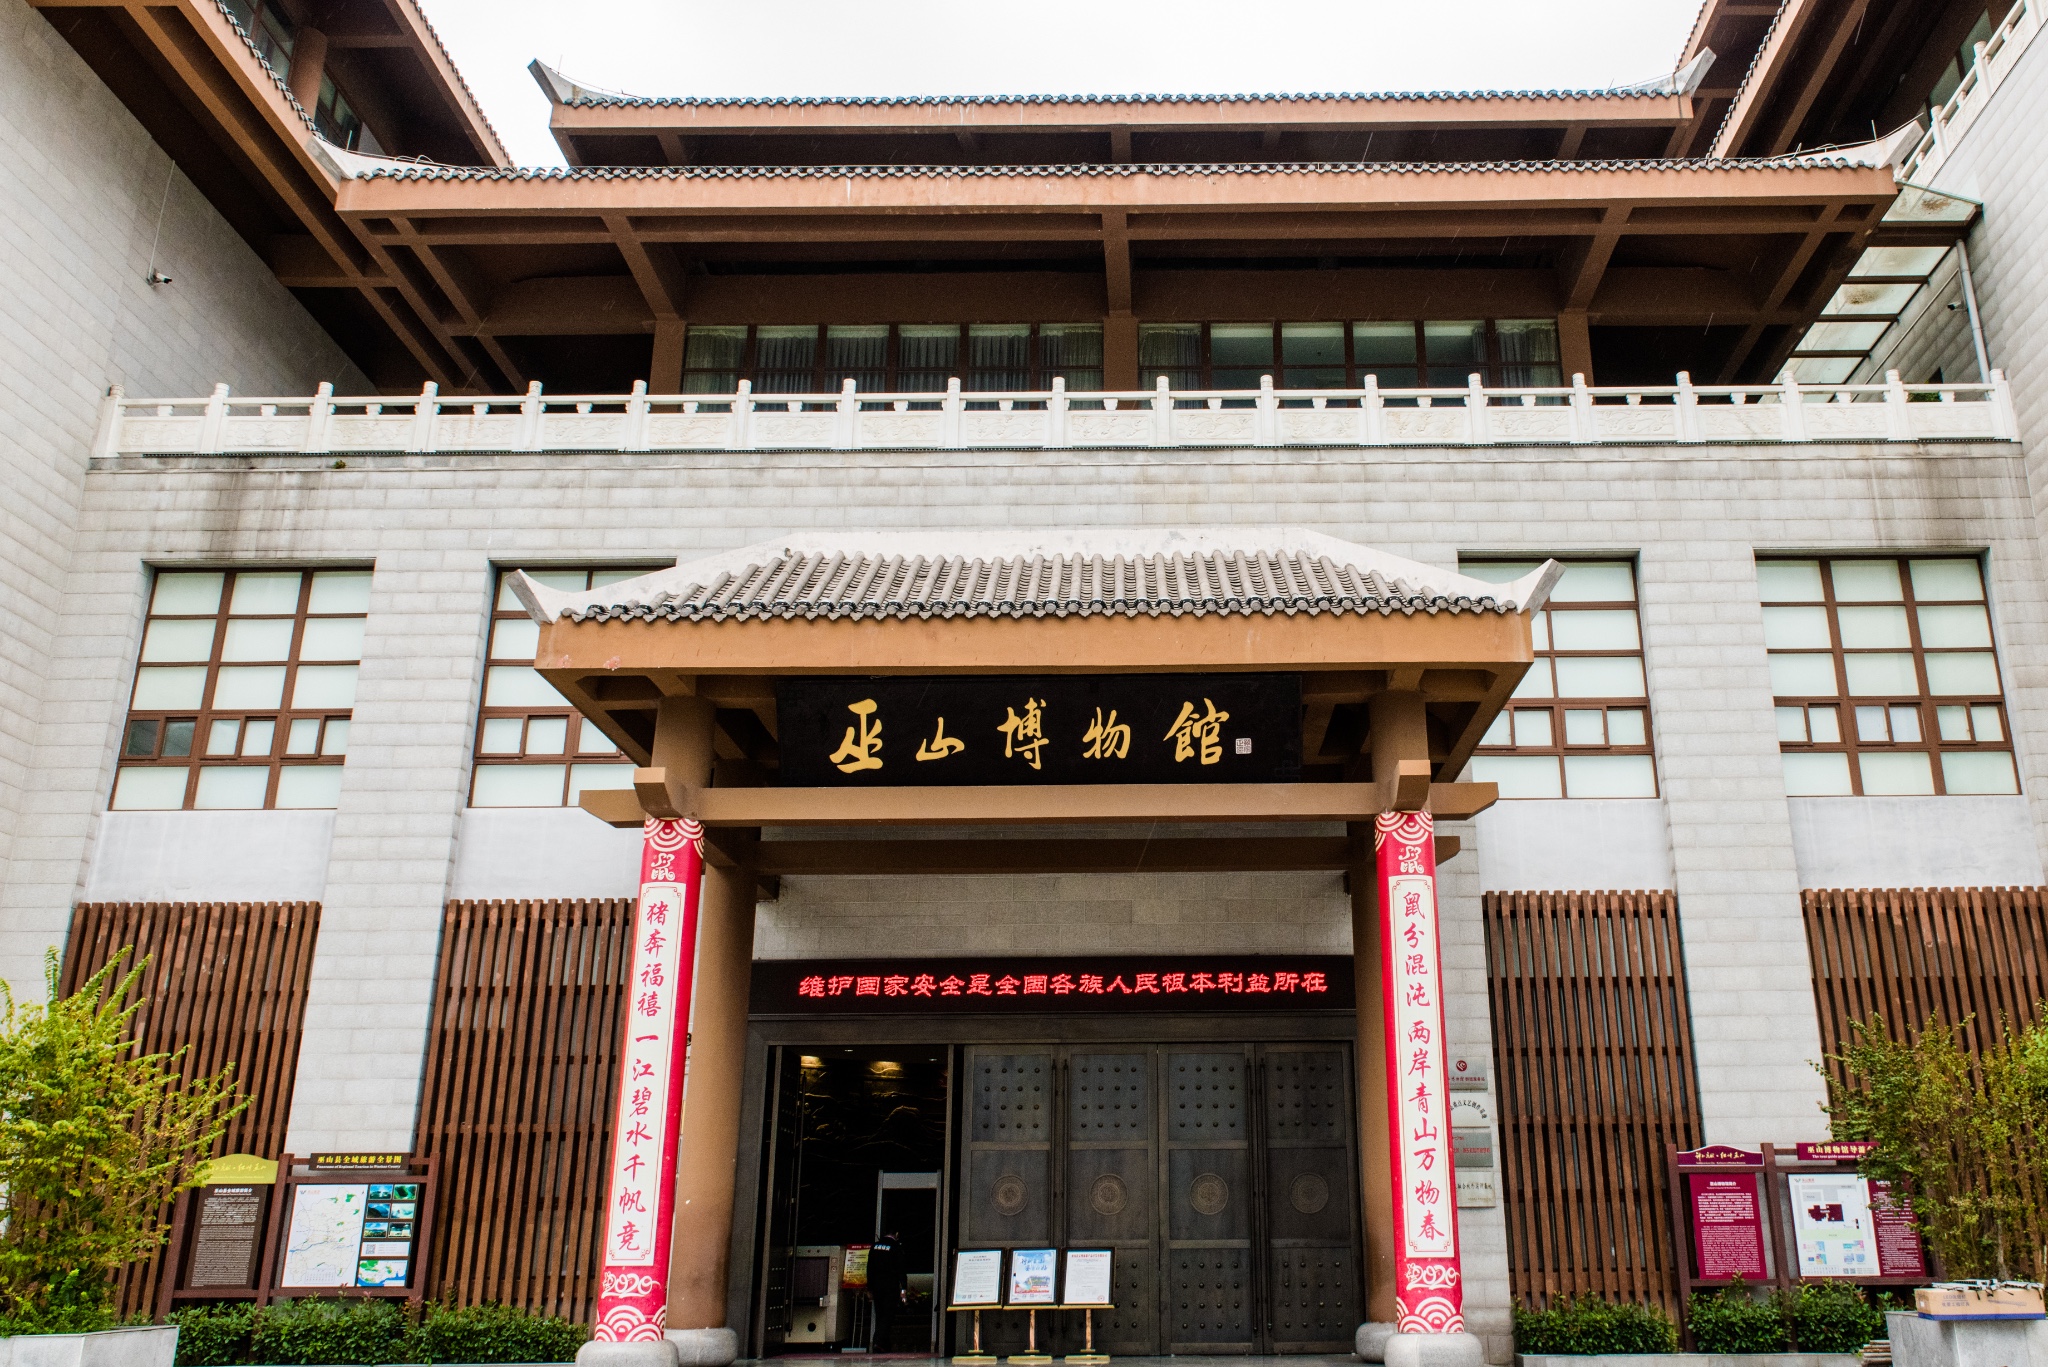 重庆巫山博物馆里面突出了龙骨坡文化, 大溪文化,巫文化等巫山地域